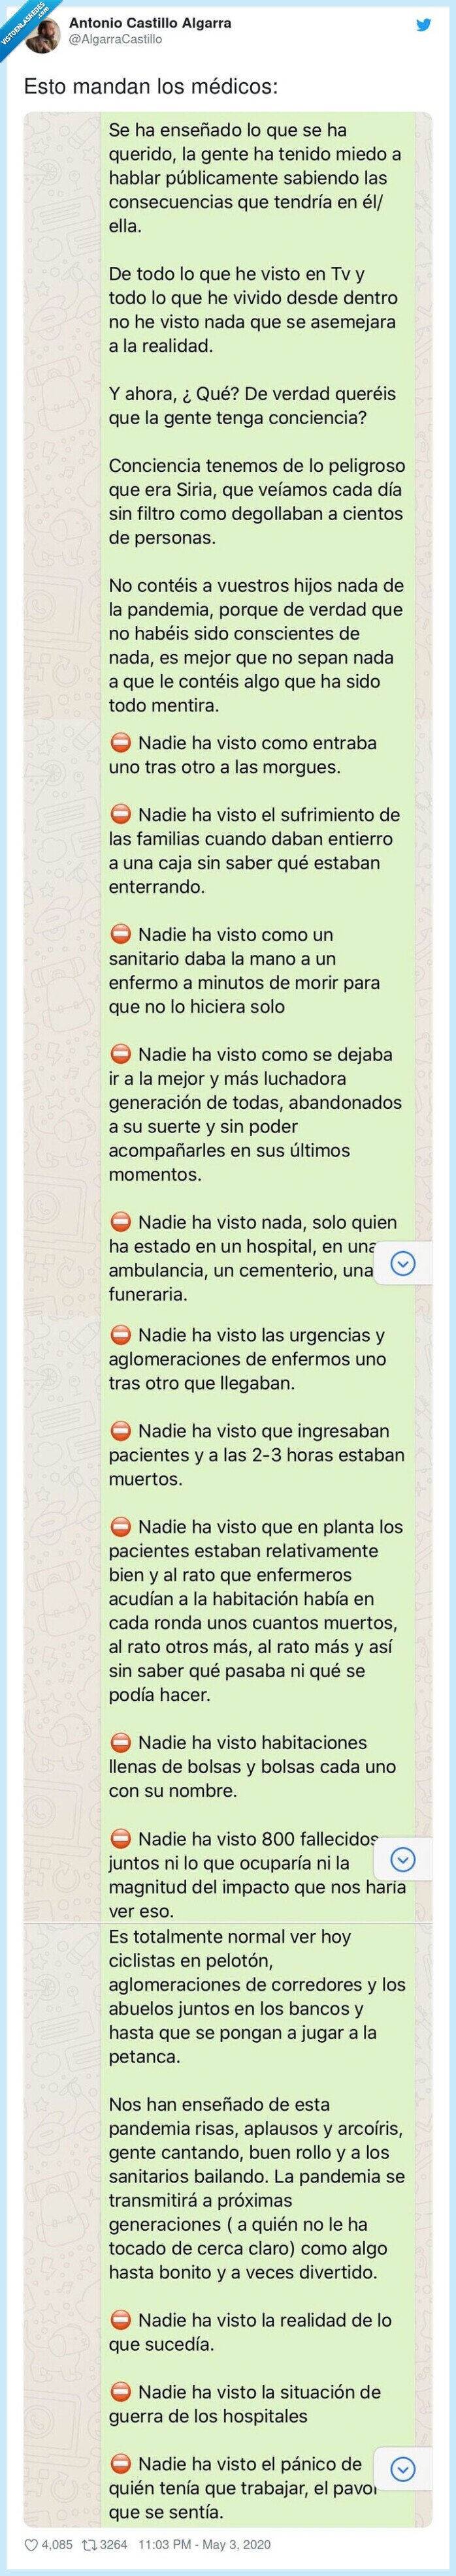 571649 - El texto que mandan los médicos por Whatsapp y que nos da un hostiazo de realidad, por @AlgarraCastillo